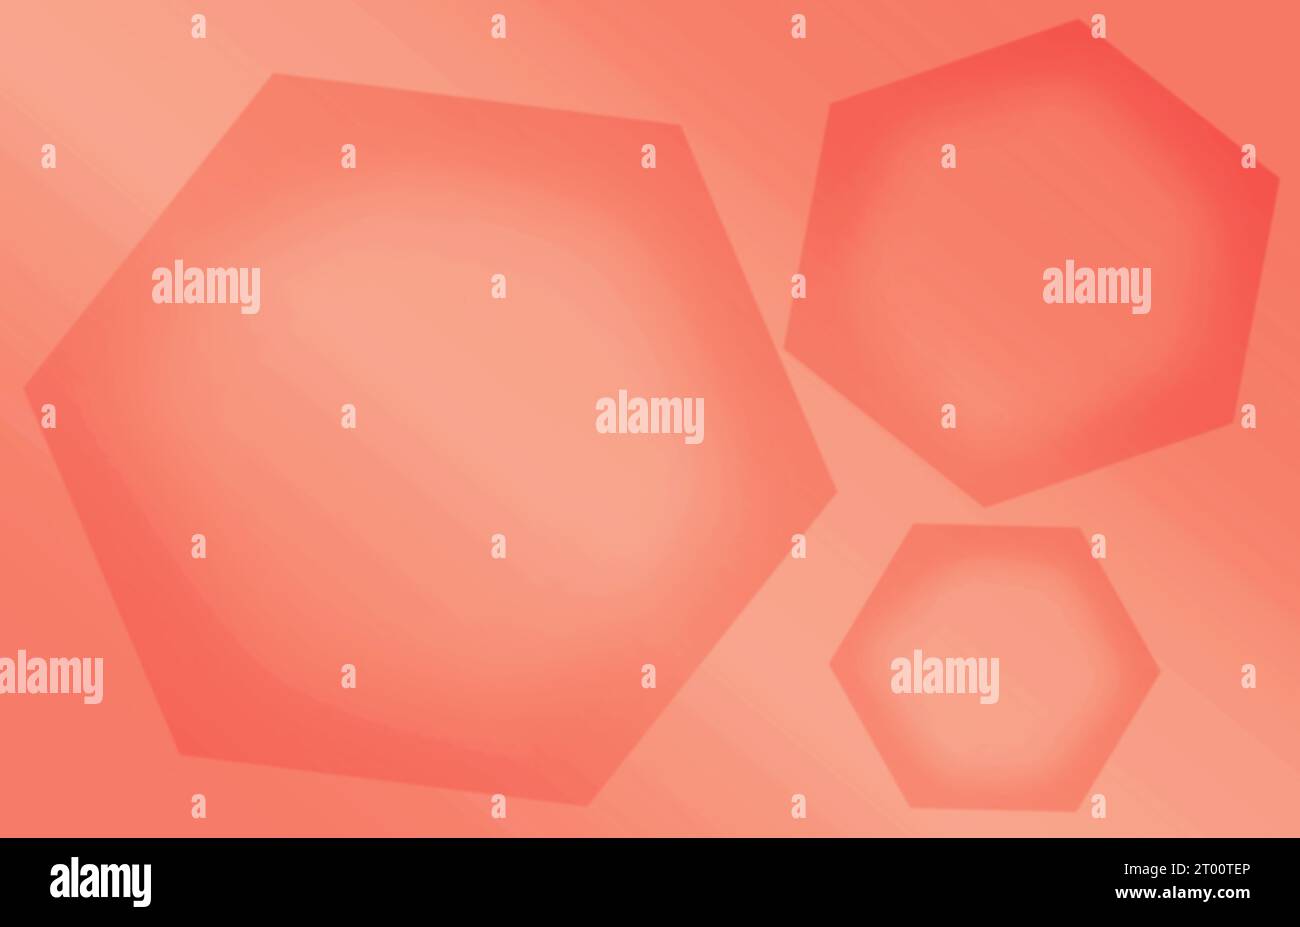 Abbildung: Farbverlauf orange rot 3D-Hexagon-Formmuster verschiedener Größe Stockfoto